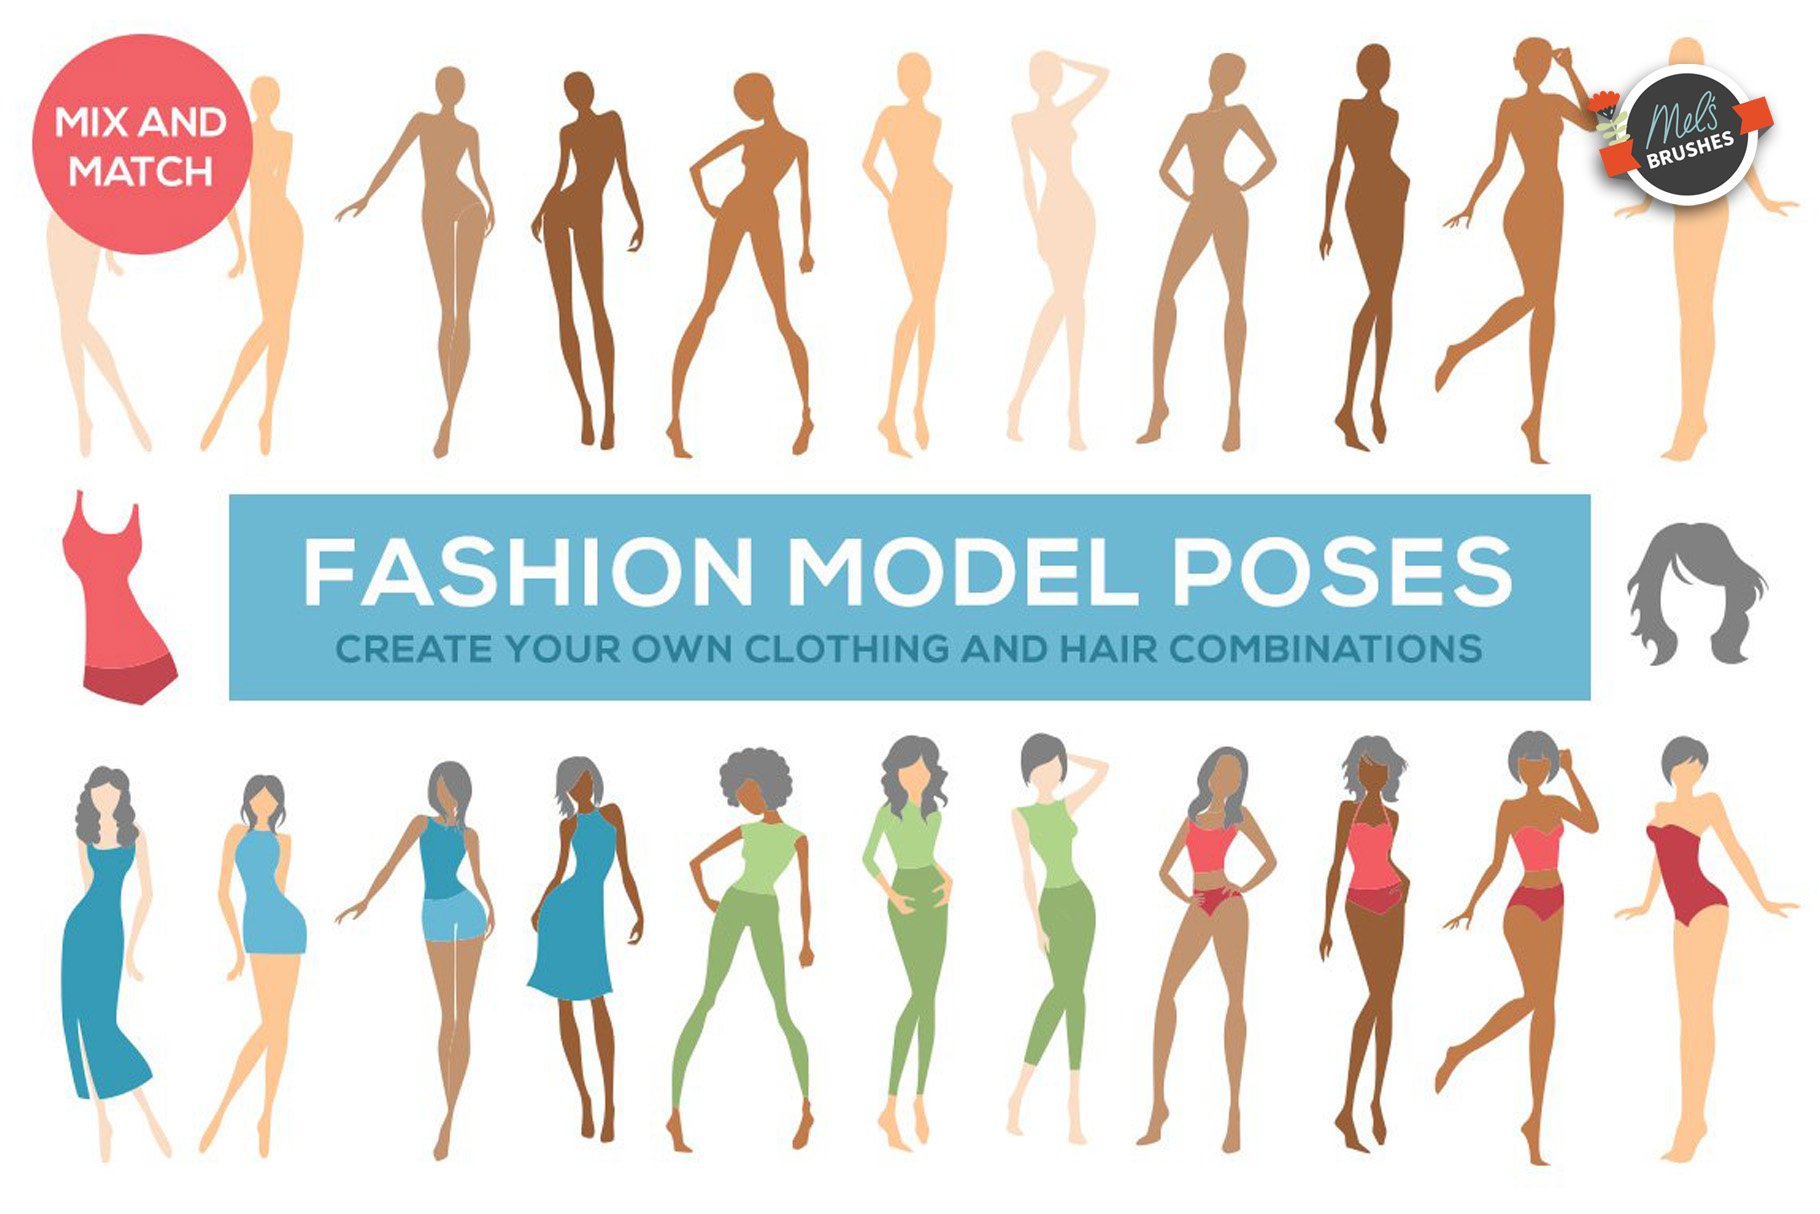 Photoshoot concept ideas| plus size model reference| plus size model poses|  portrait photoshoot| | Plus size posing, Fashion model poses, Female pose  reference